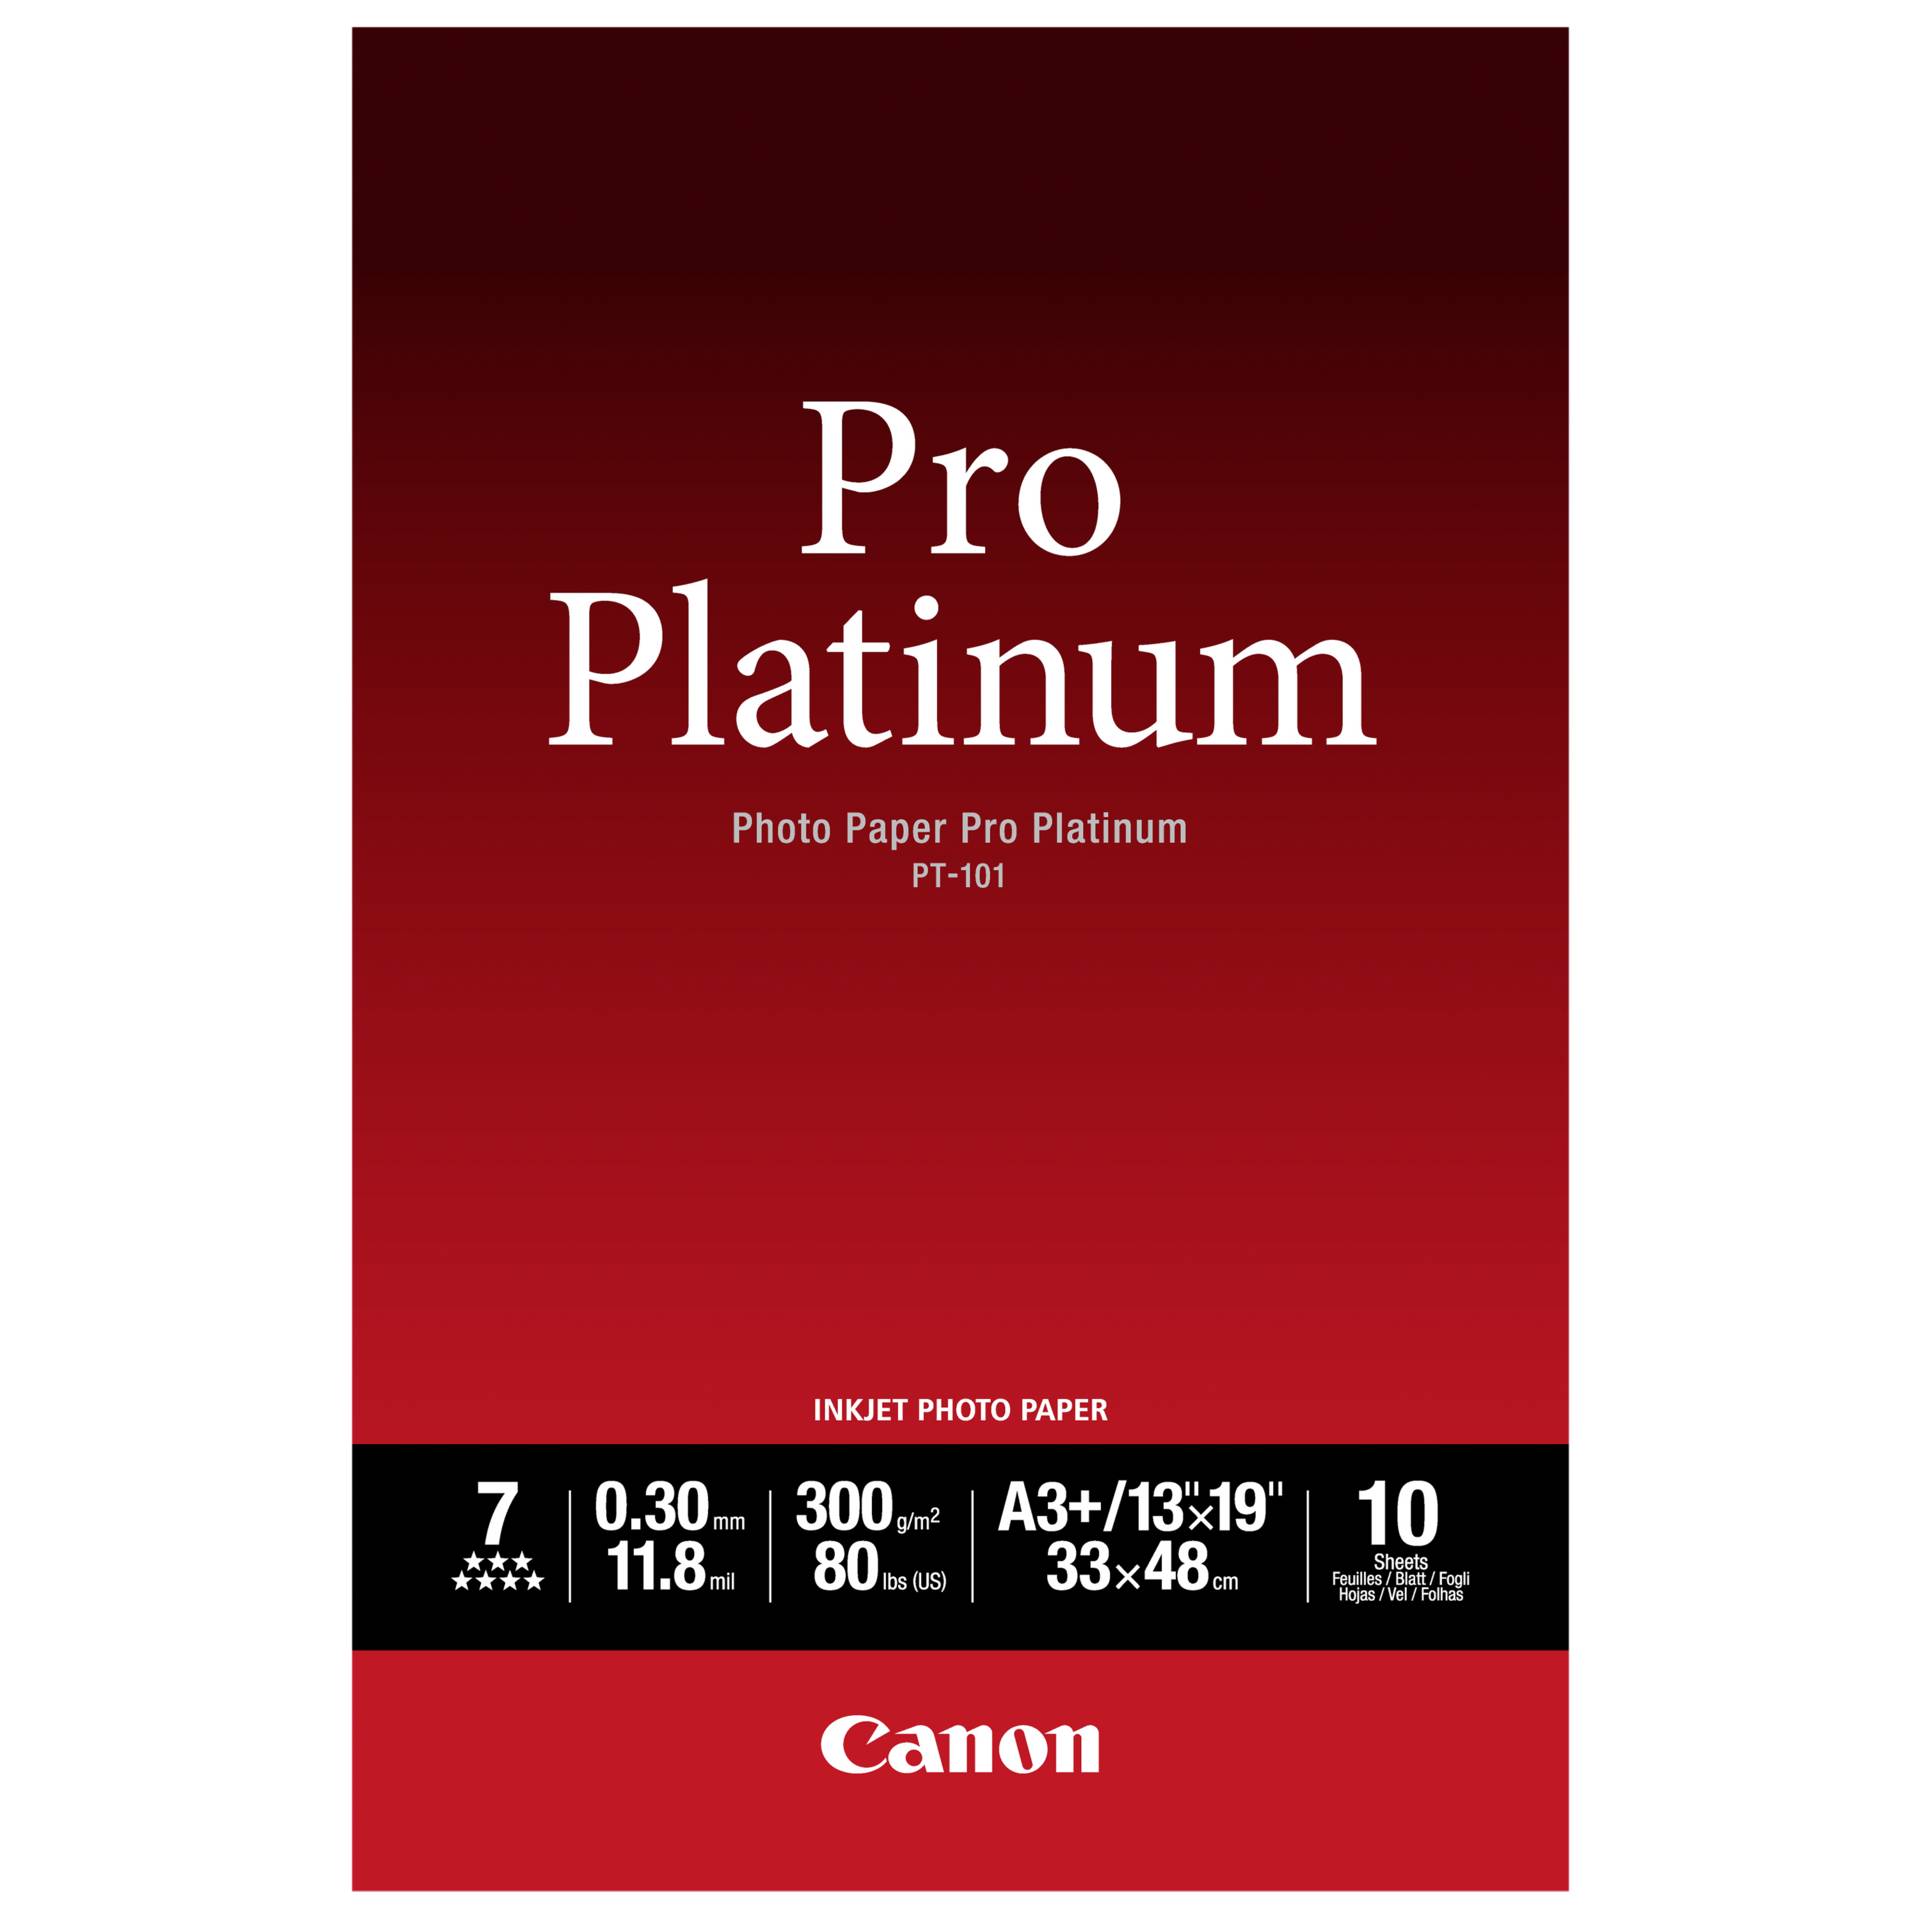 Canon PT-101 A 3+, 10 fogli carta foto  Pro Platinum   300 g